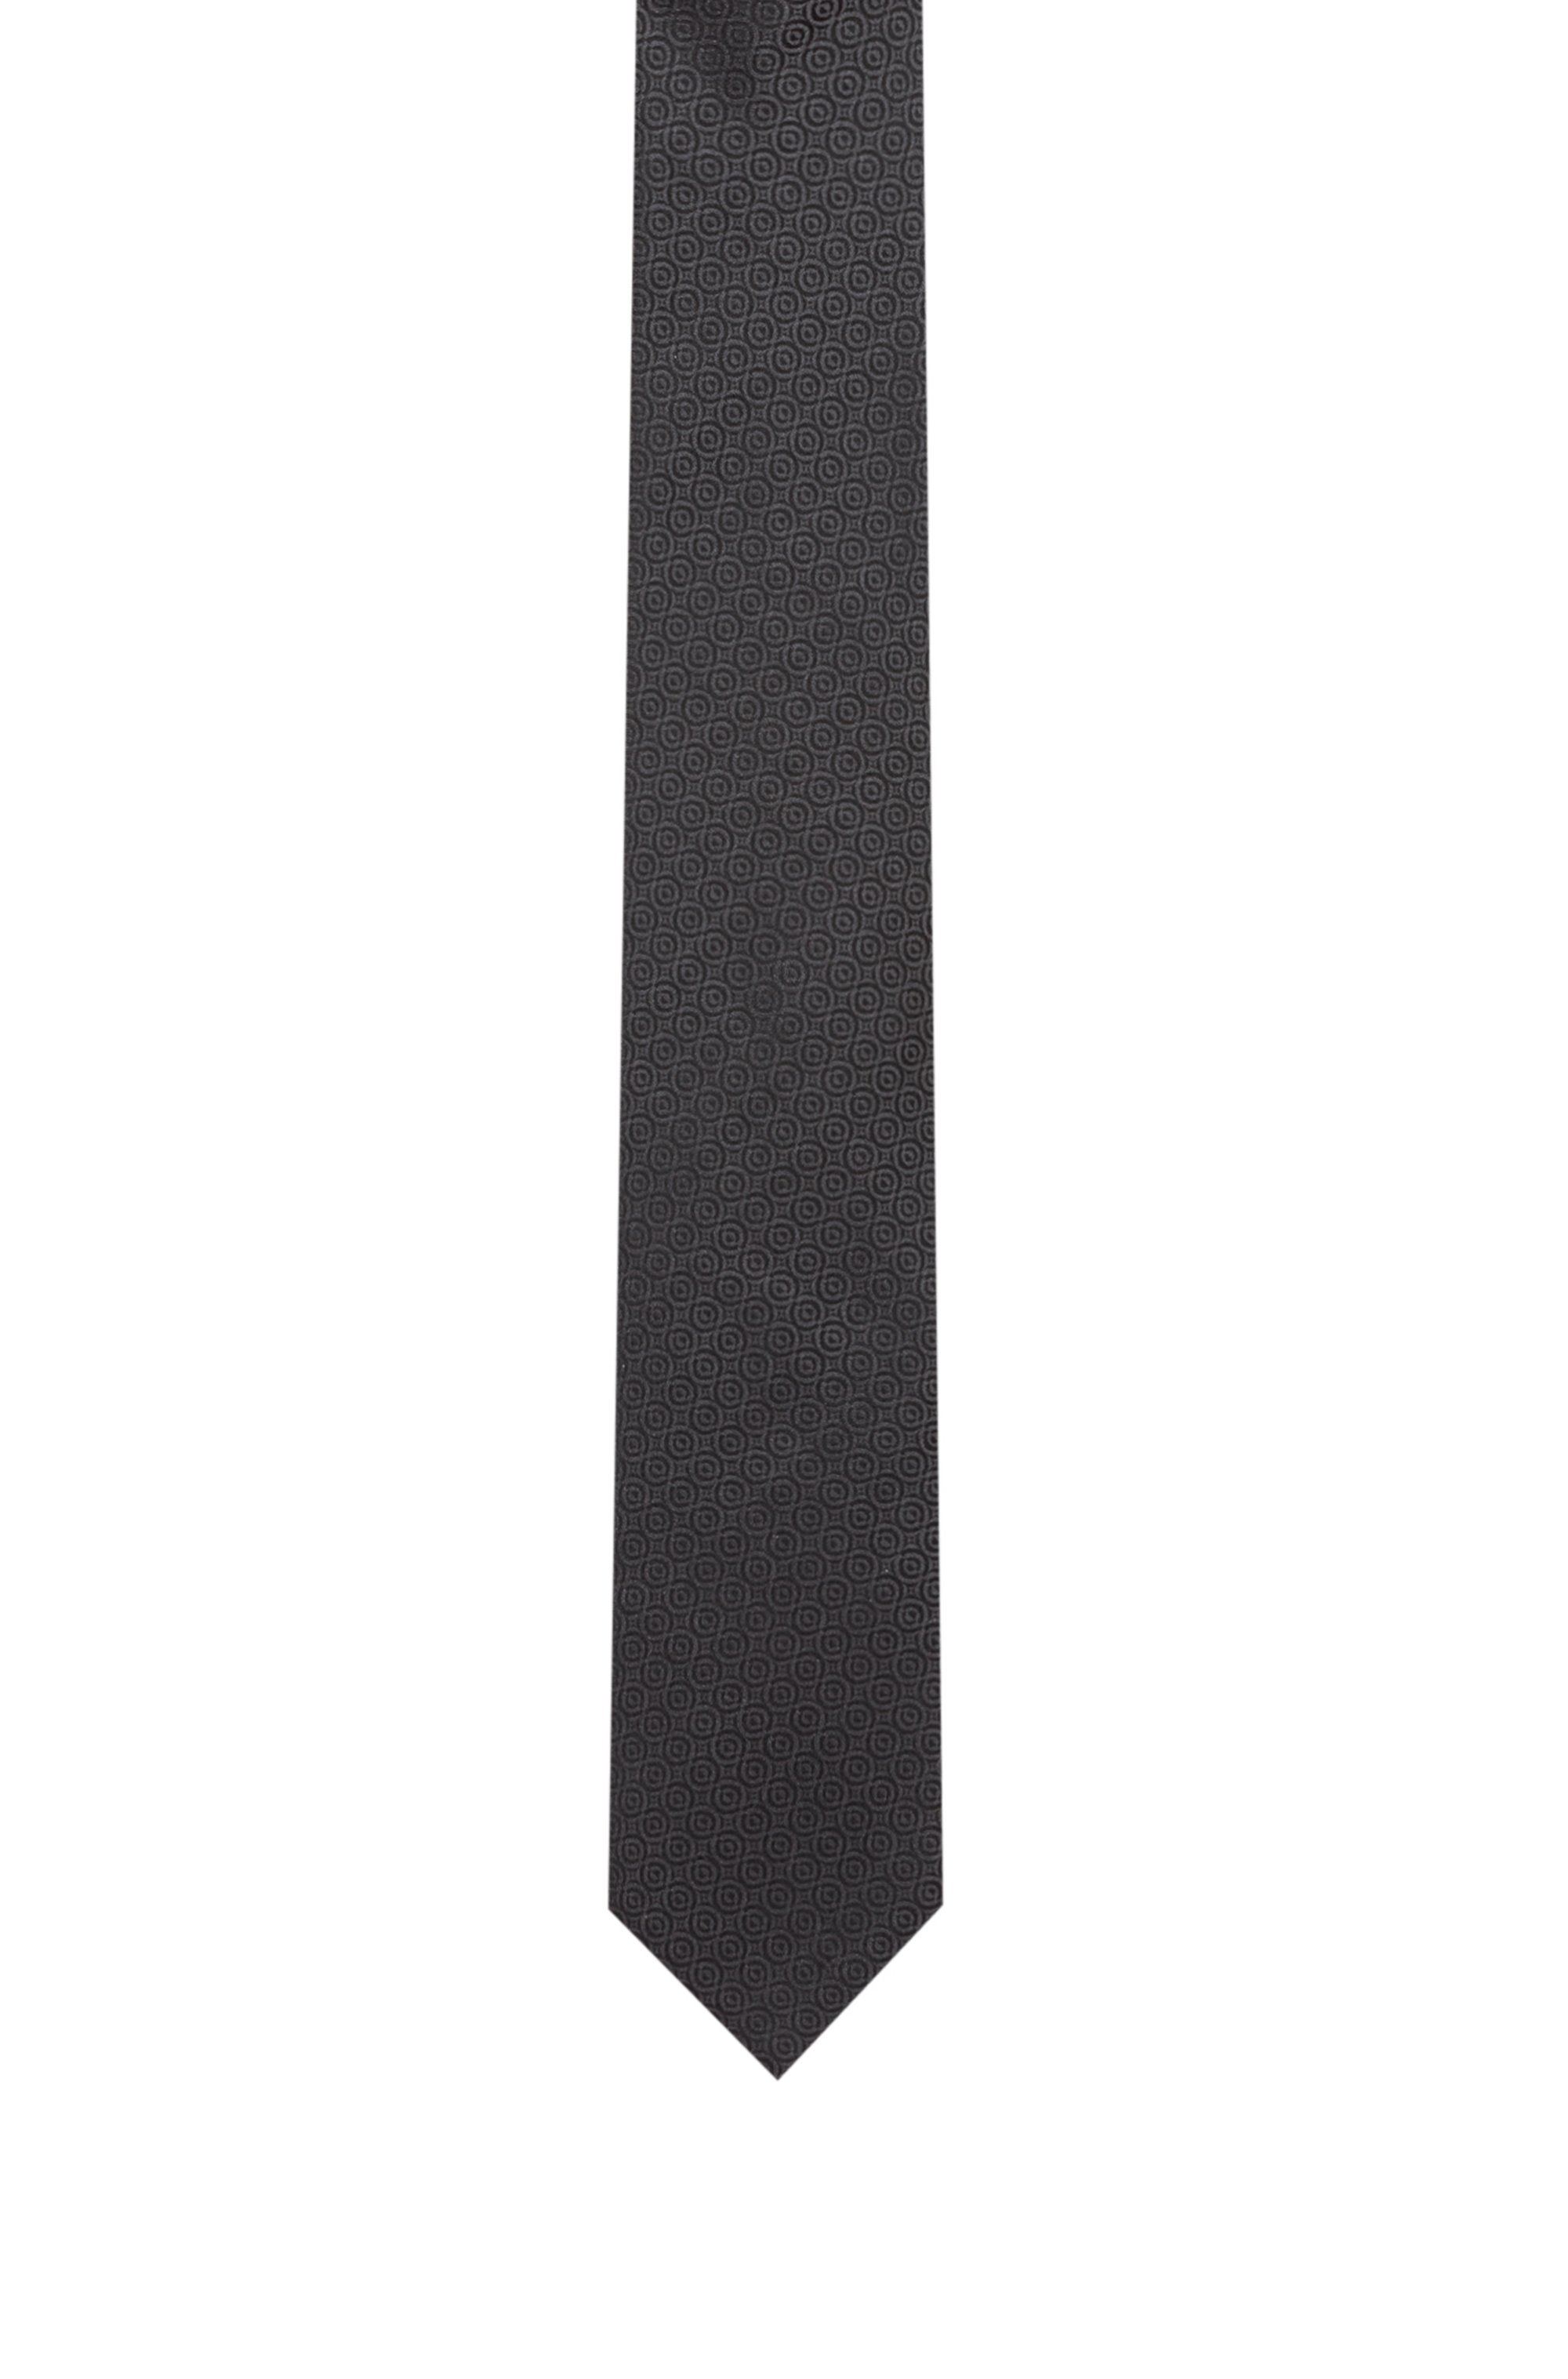 Cravate en jacquard de soie avec motif, Noir